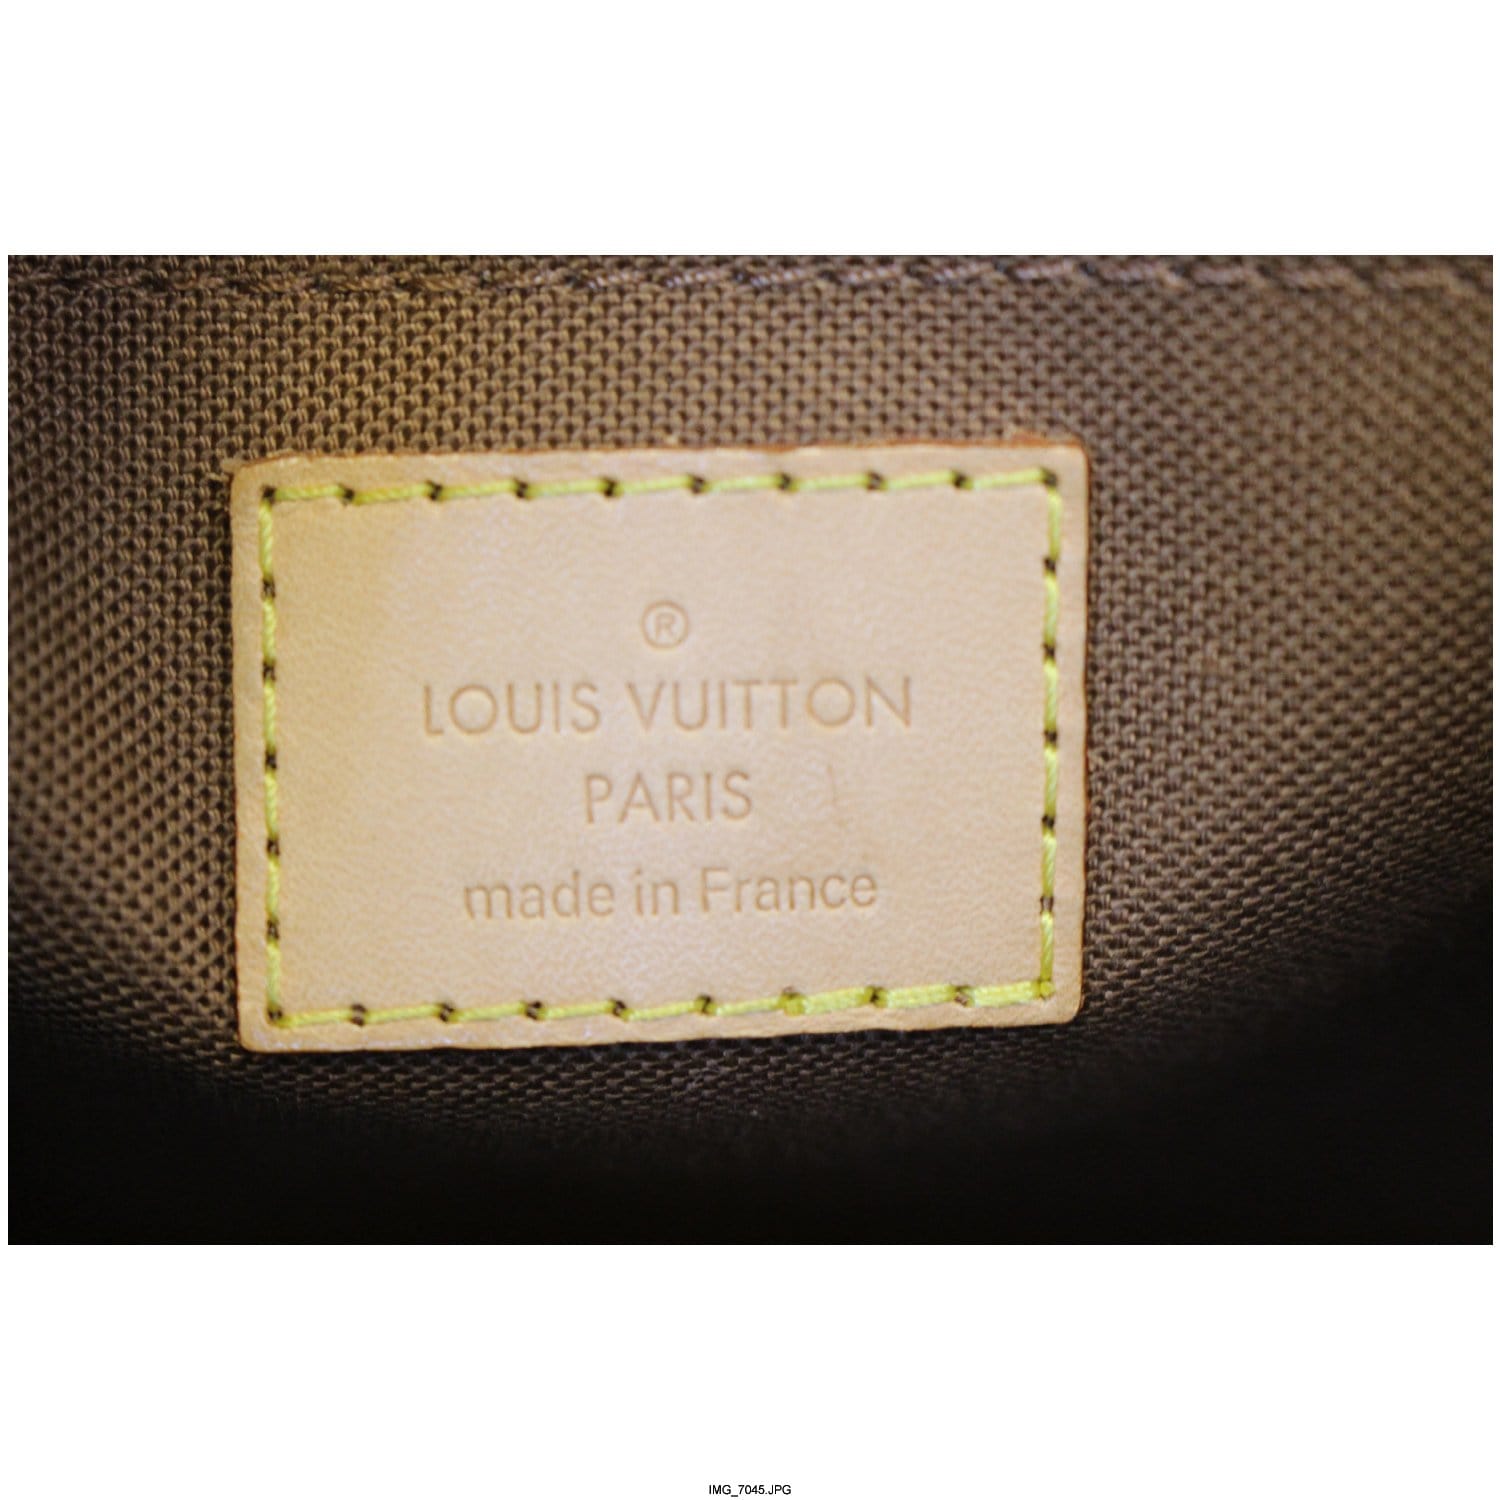 Louis Vuitton Monogram Canvas Sologne QJB0E74J0B124